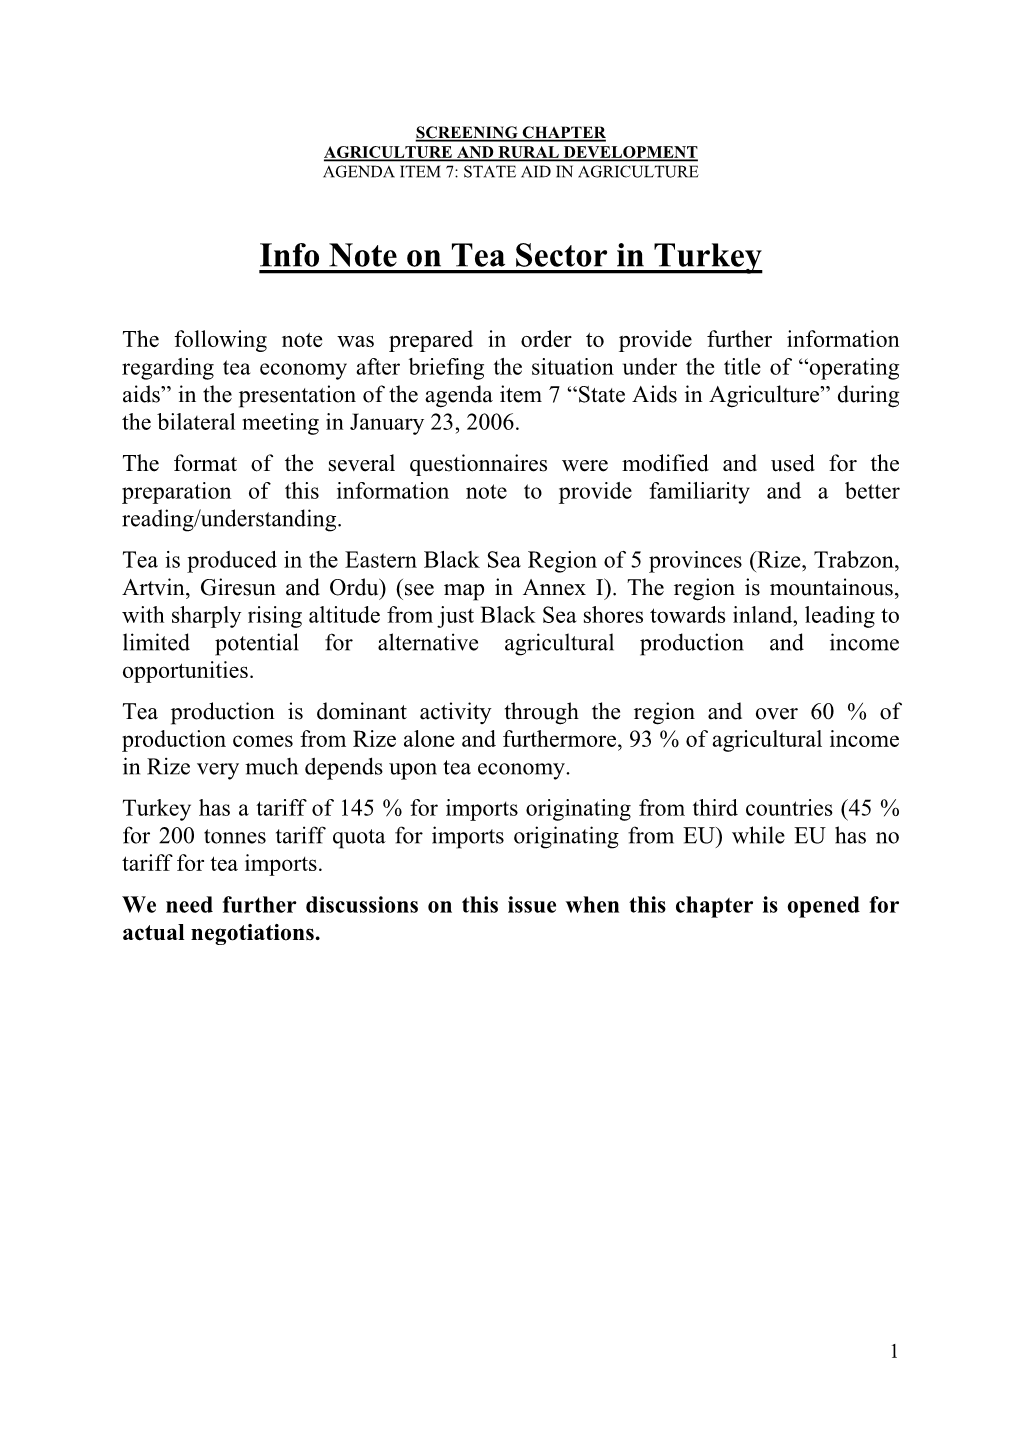 Info Note on Tea Sector in Turkey